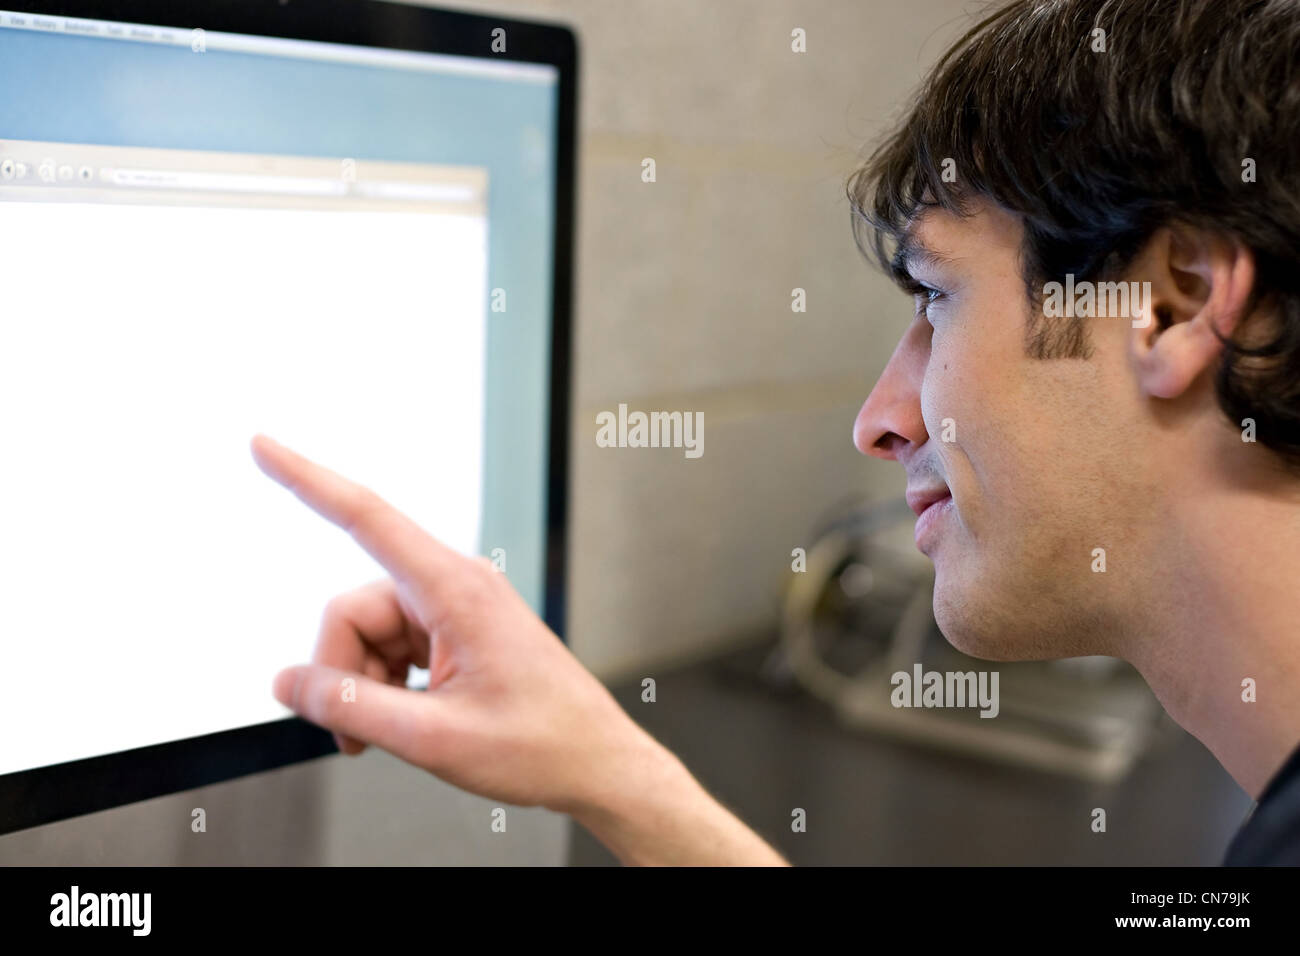 Ein junger Mann auf einem modernen Computer monitor lcd mit Exemplar. Geringe Schärfentiefe mit stärksten Fokus auf das Gesicht. Stockfoto